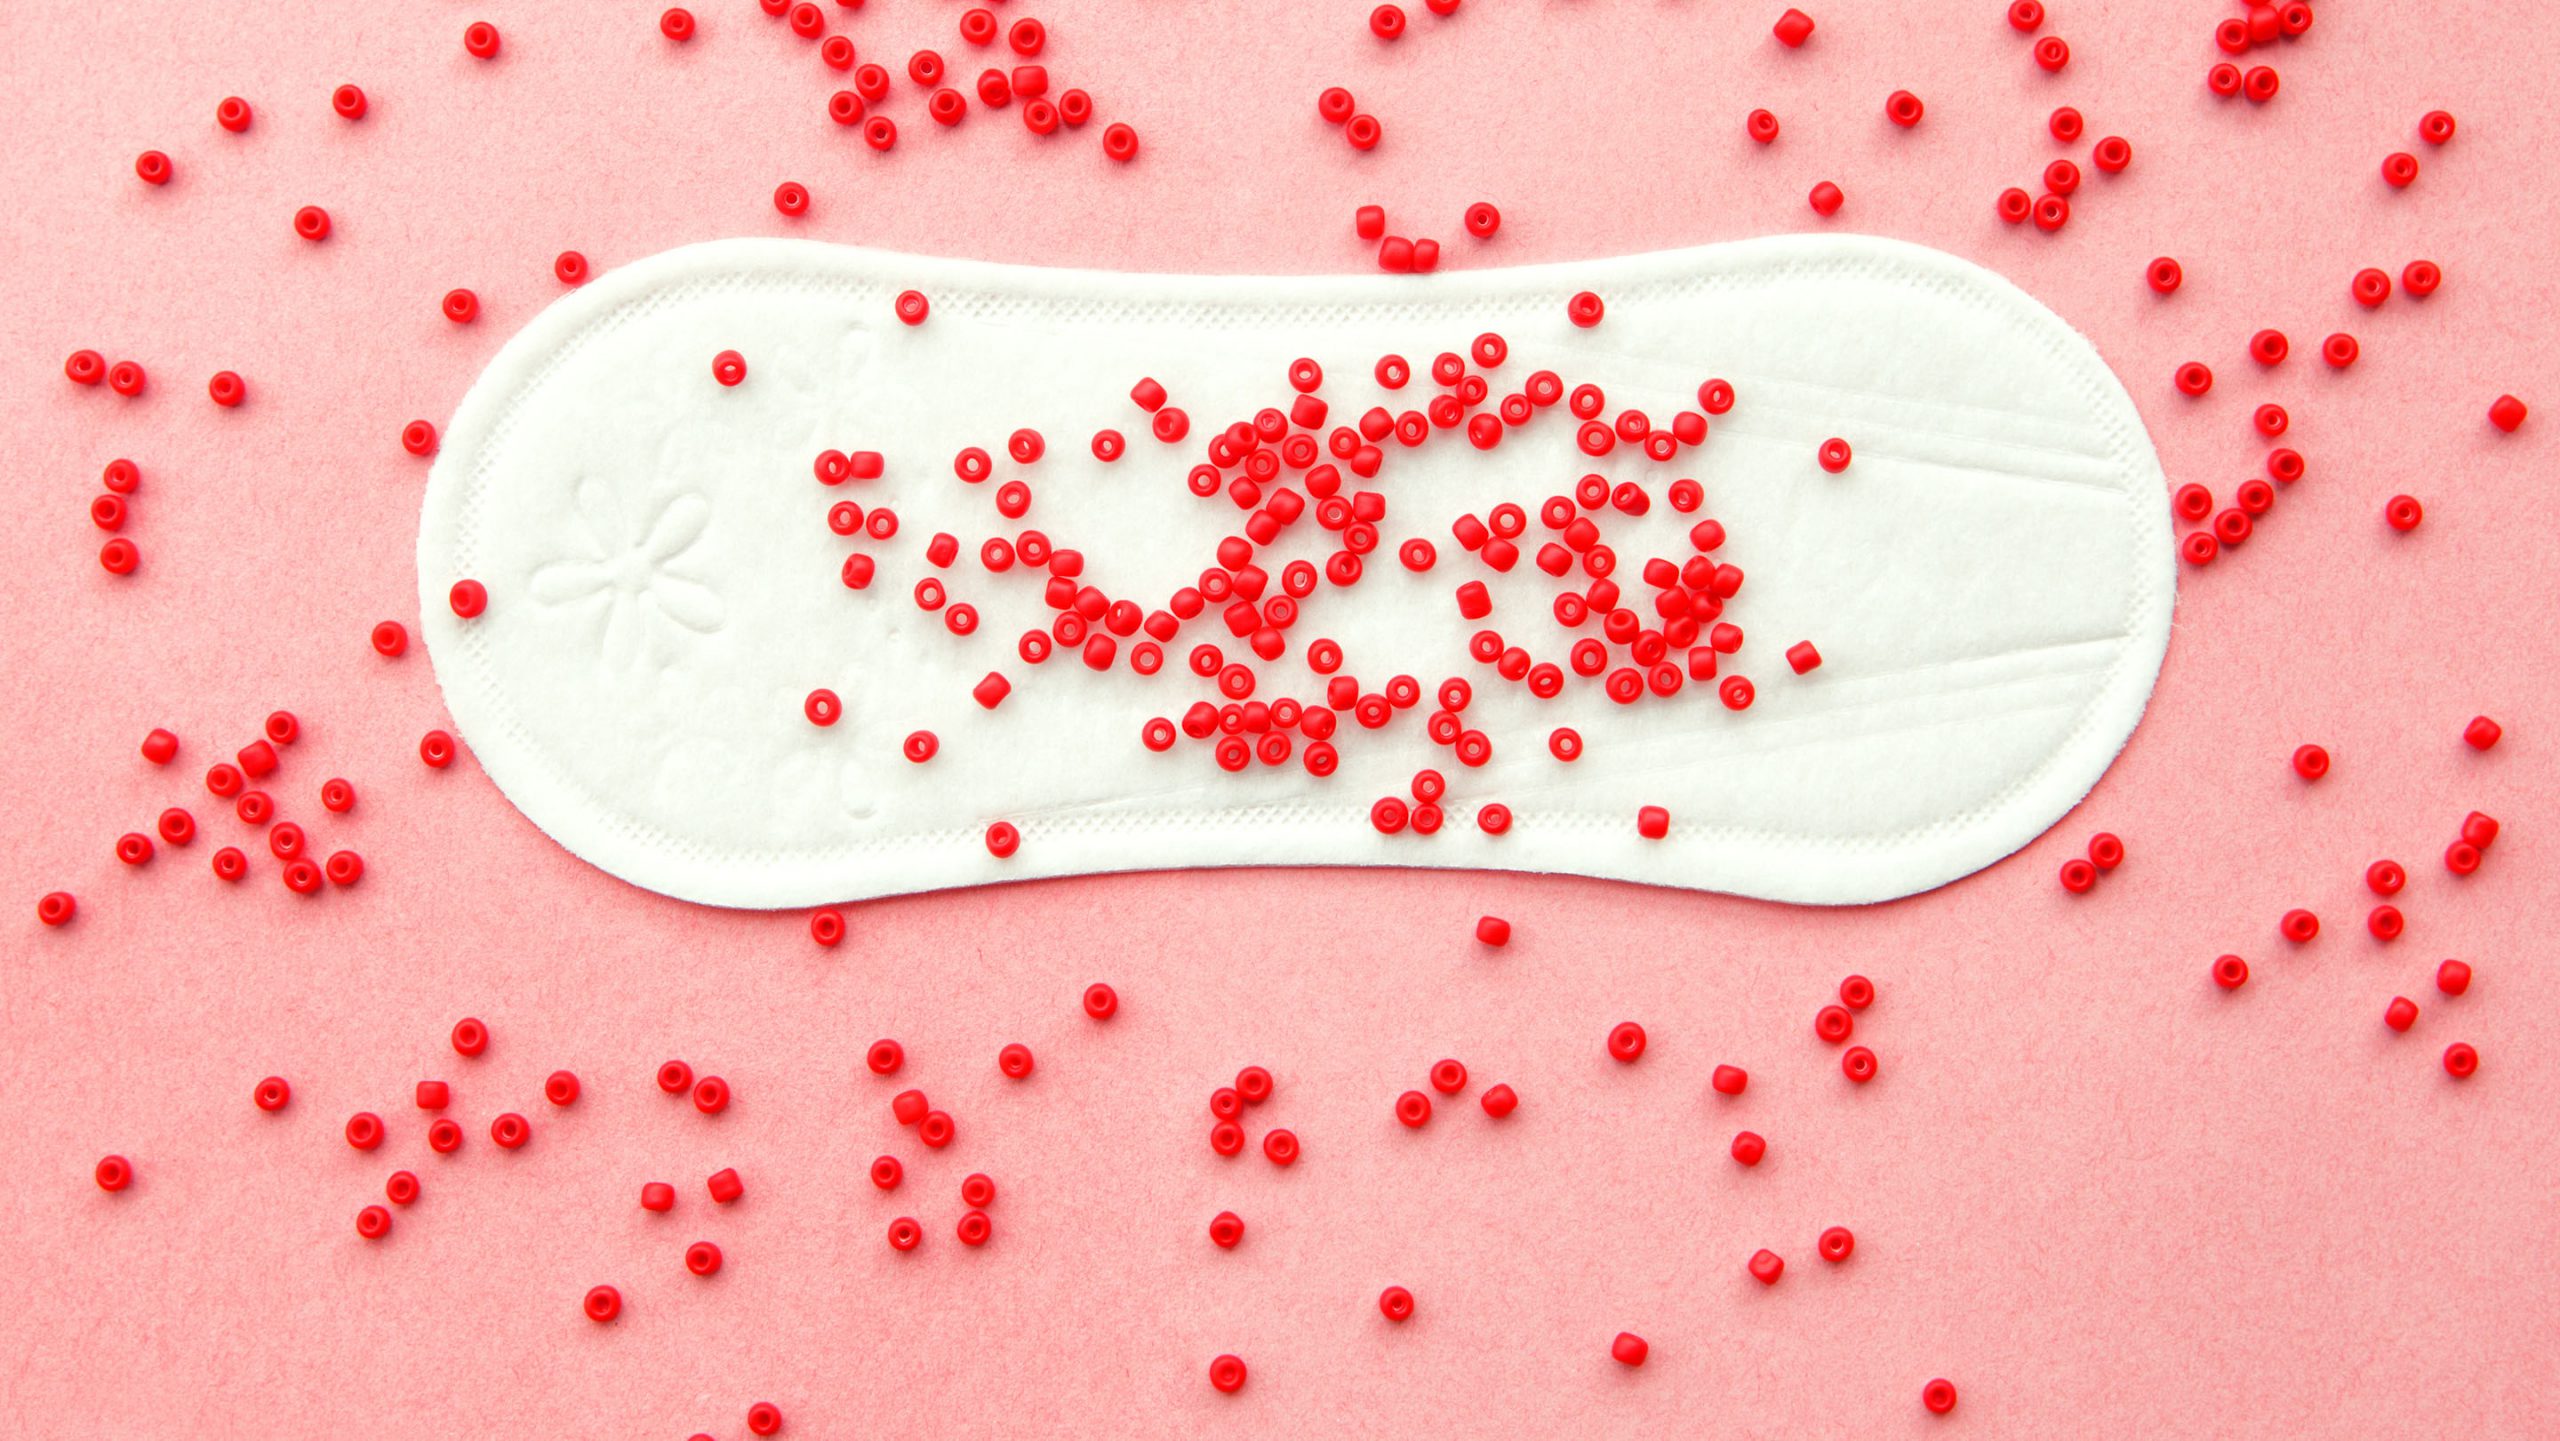 werper Moreel onderwijs Dag Heb jij een gezonde menstruatiecyclus? - gezondNU